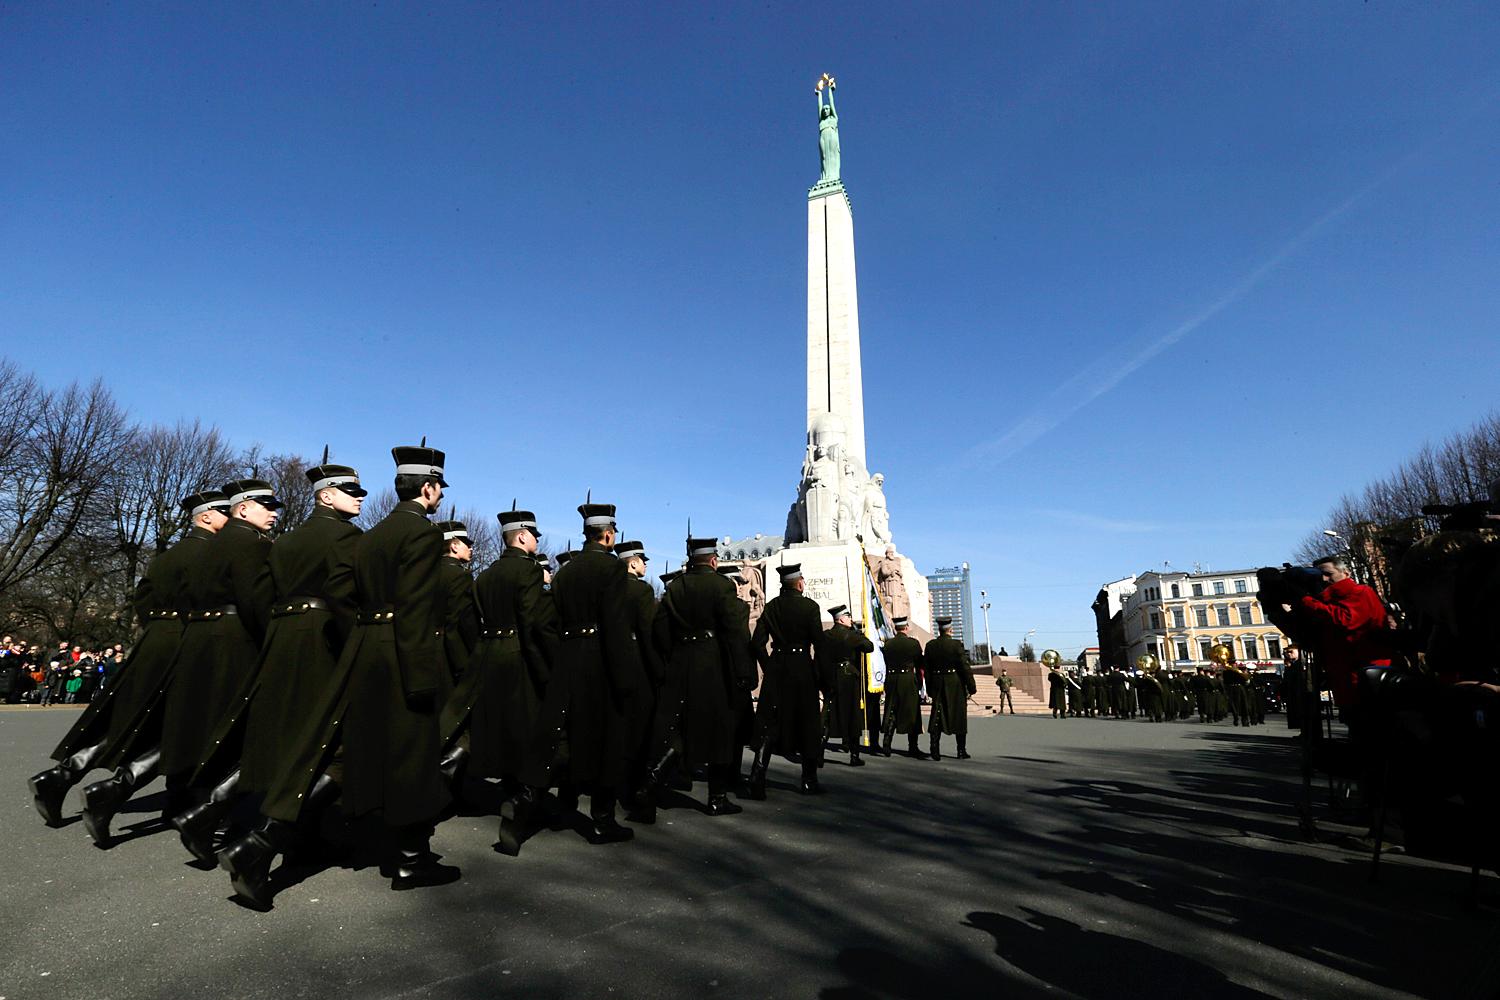 A lett hadsereg felvonulása - képesek szövetségeseikkel megvédeni országukat?